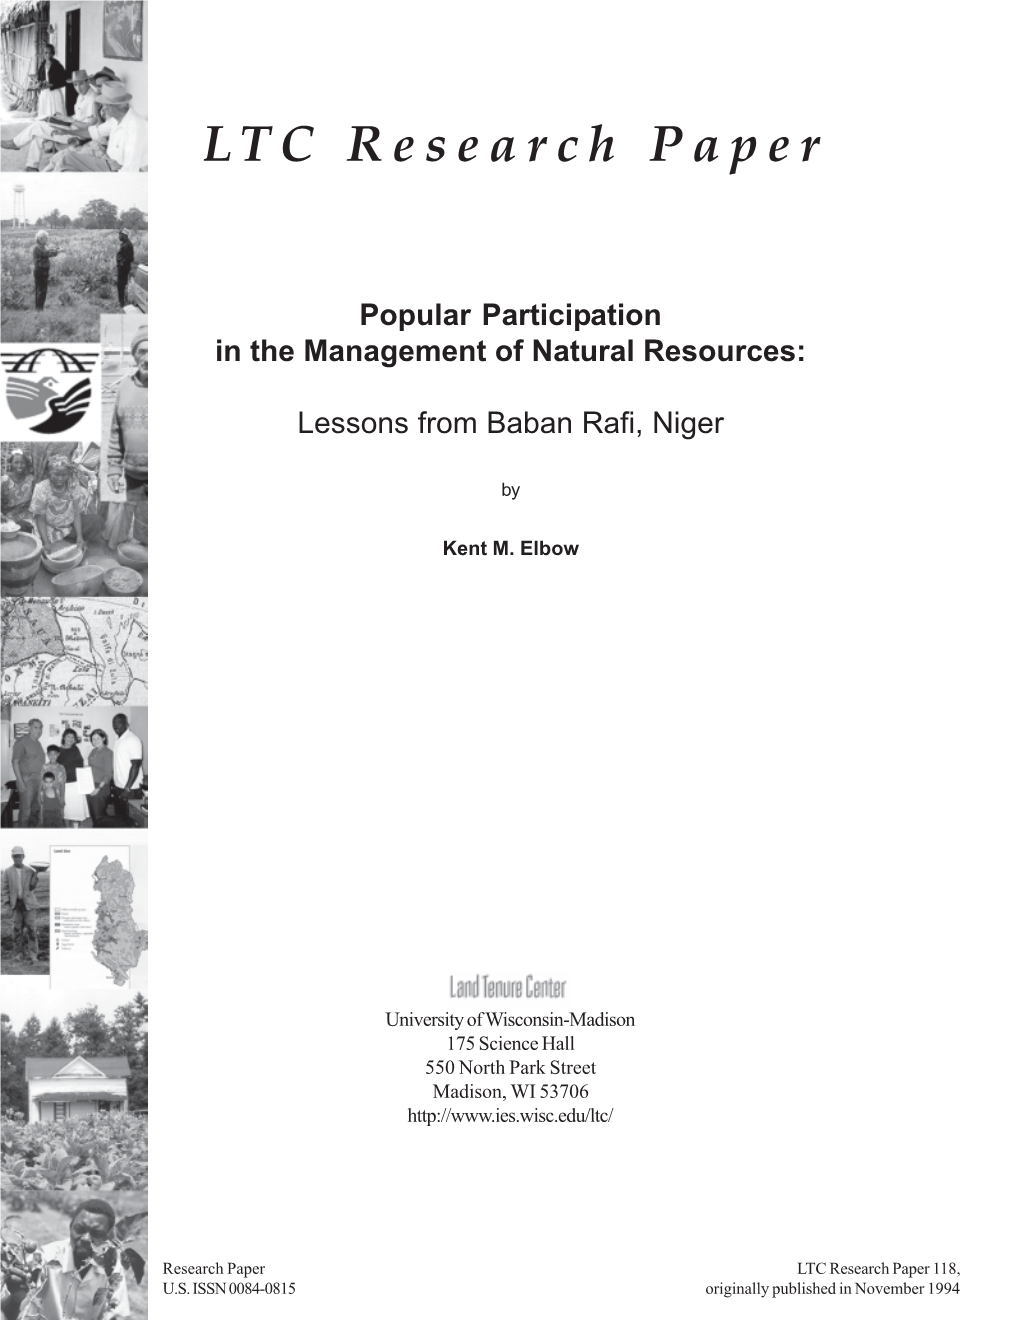 LTC Research Paper